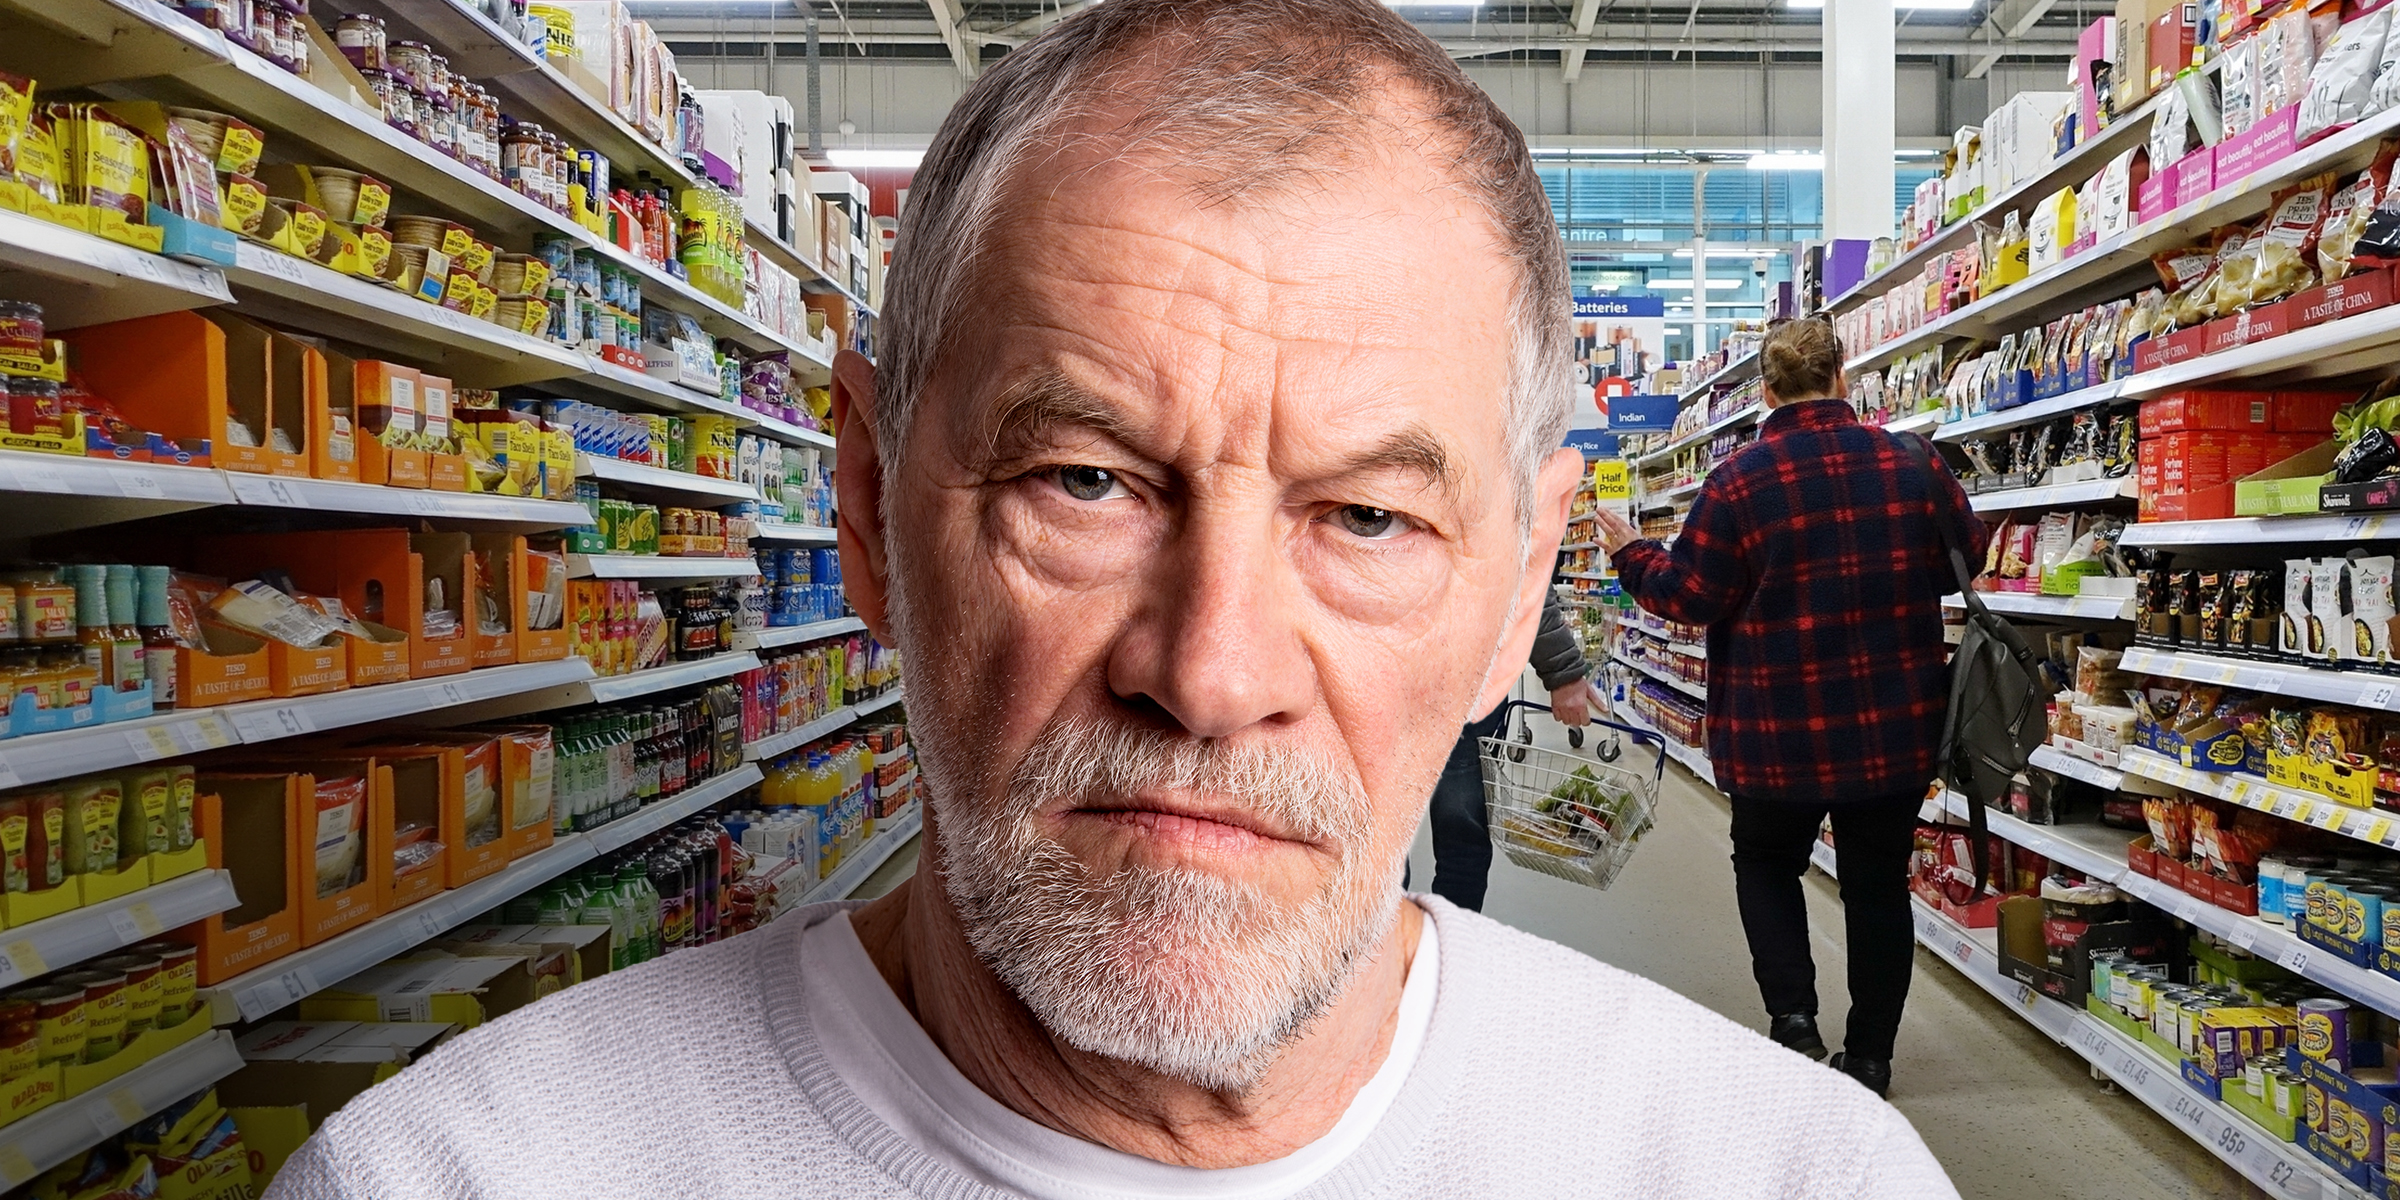 Un homme en colère photographié dans un super marché | Source : Shutterstock